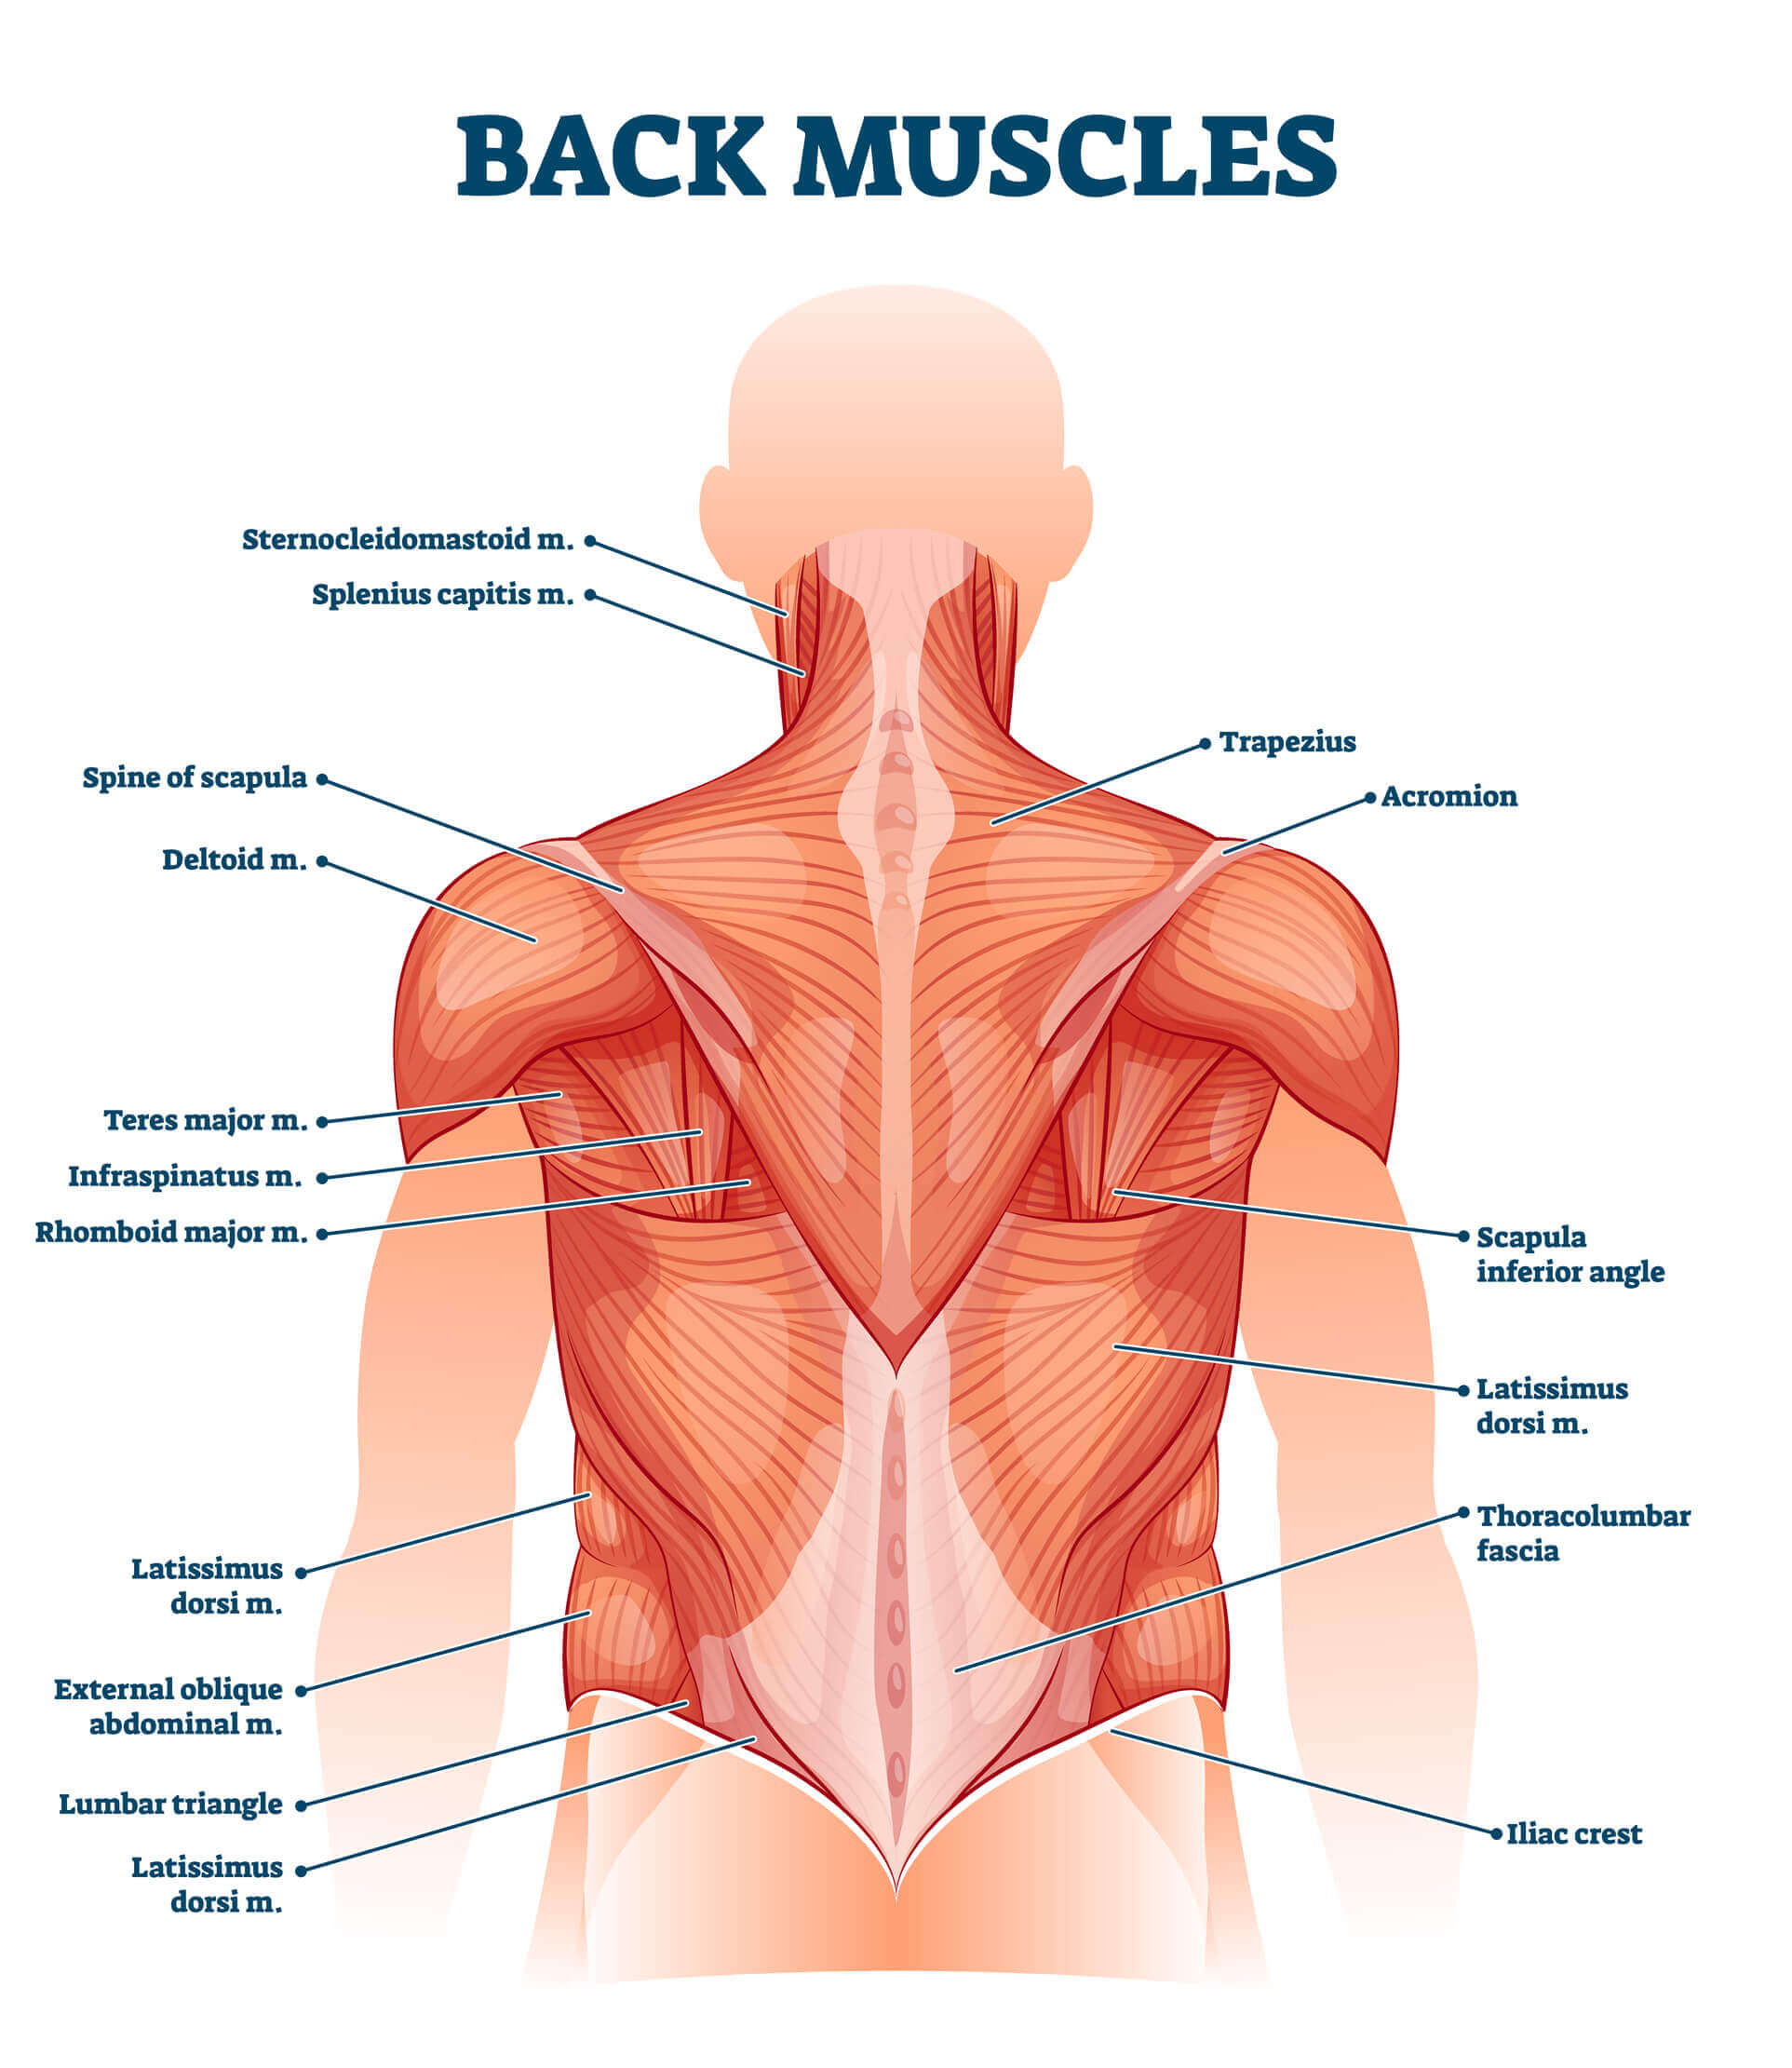 Les muscles du dos - fiche santé du décathlon